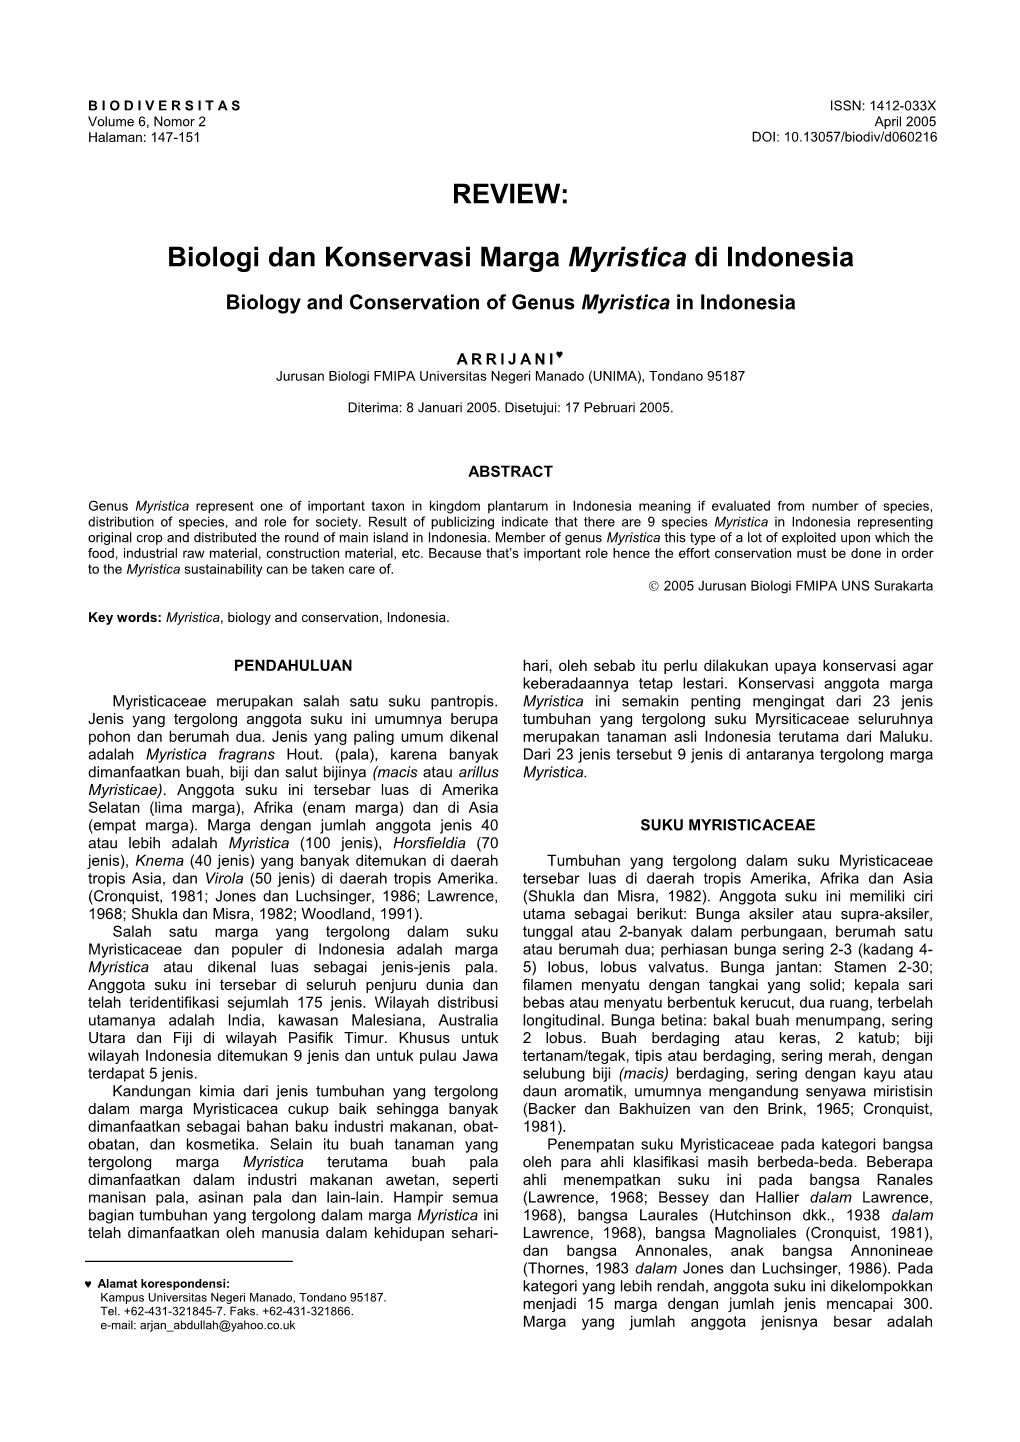 REVIEW: Biologi Dan Konservasi Marga Myristica Di Indonesia